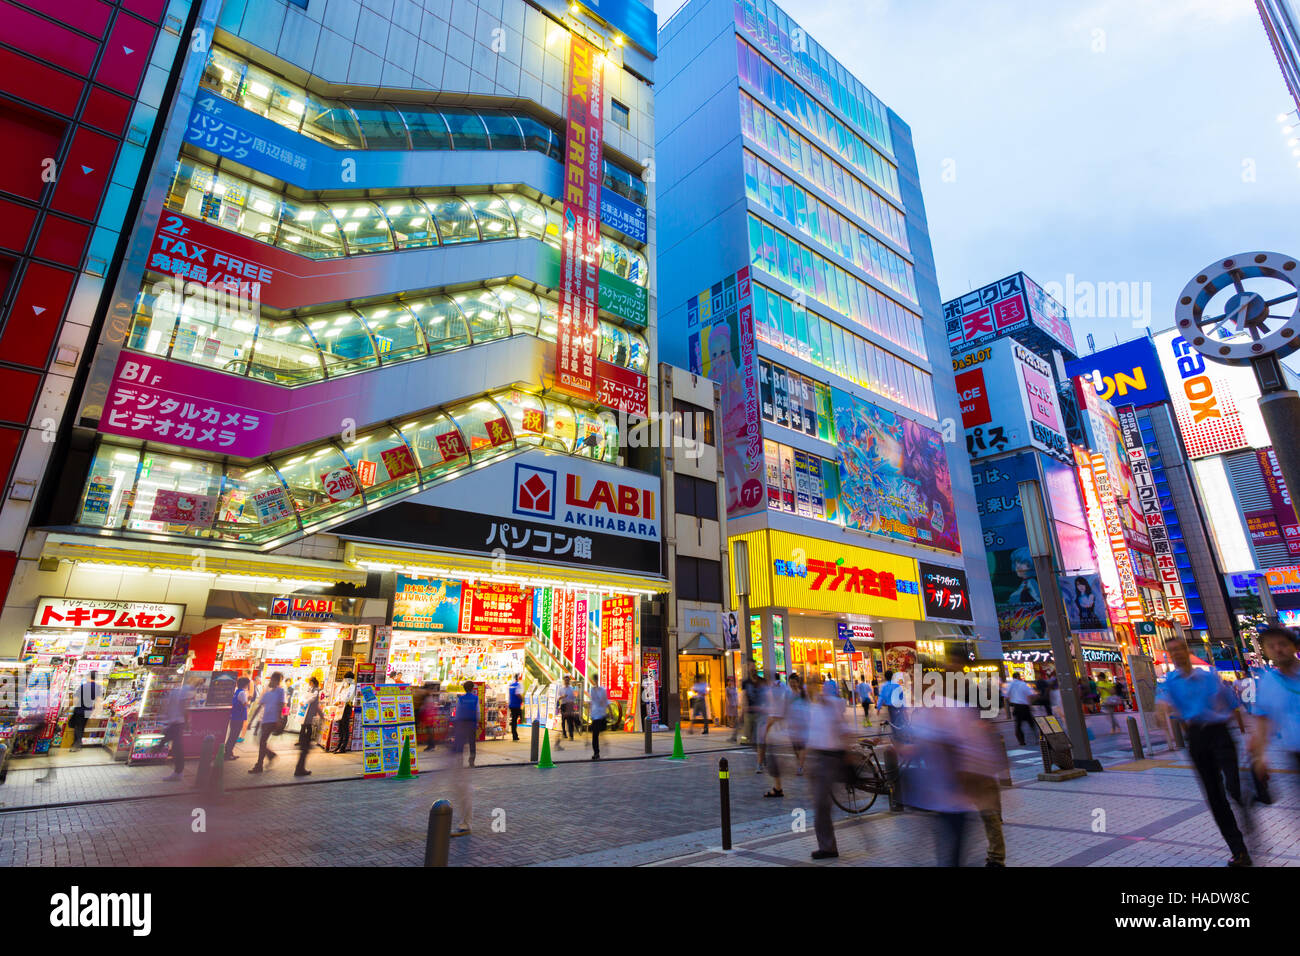 Massen von geschäftigen Menschen herumlaufen Elektronik Hub Stadtteil Akihabara unter den hellen Lichtern und Shop Schilder, Werbung Stockfoto